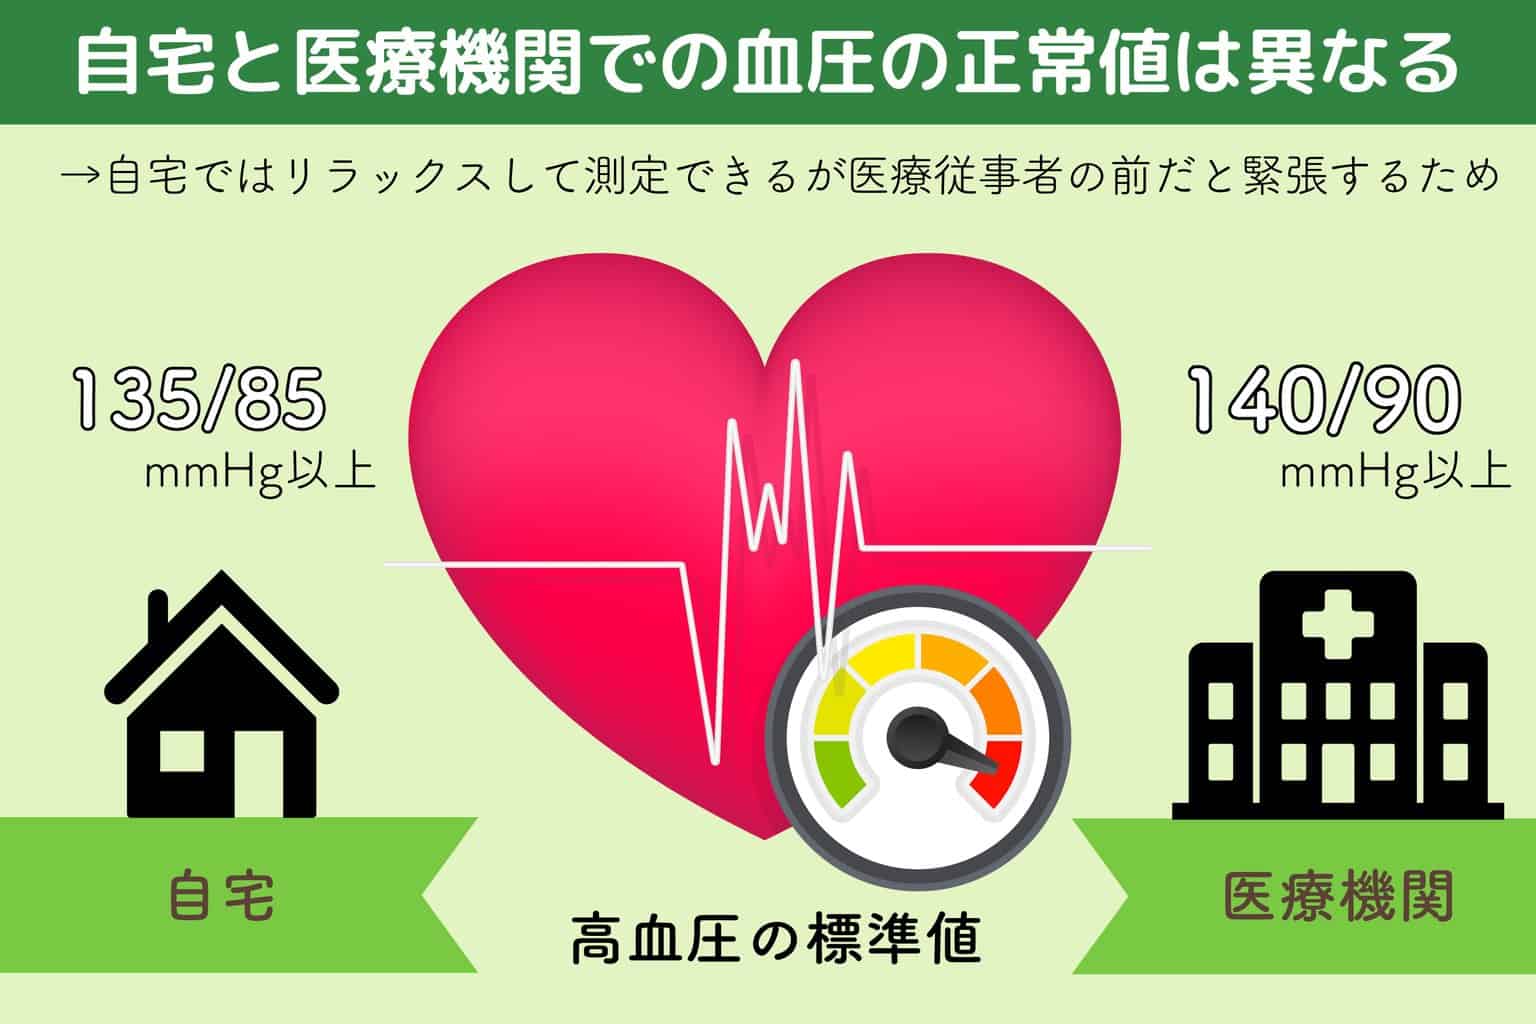 自宅と医療機関での血圧の正常値は異なる